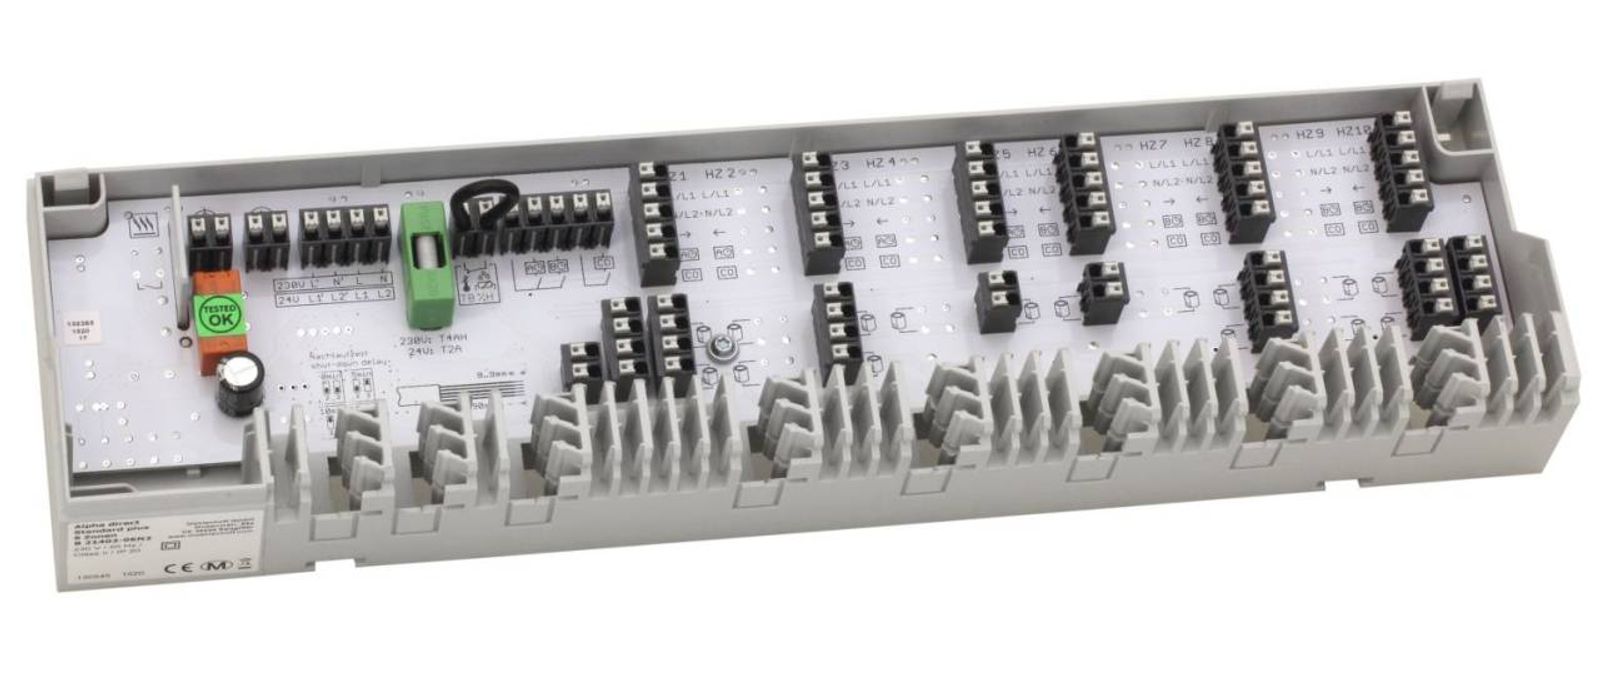 Anschlussleiste Alpha Basis direct Standard Plus 230 V für 6 Heiz- und Kühlzonen